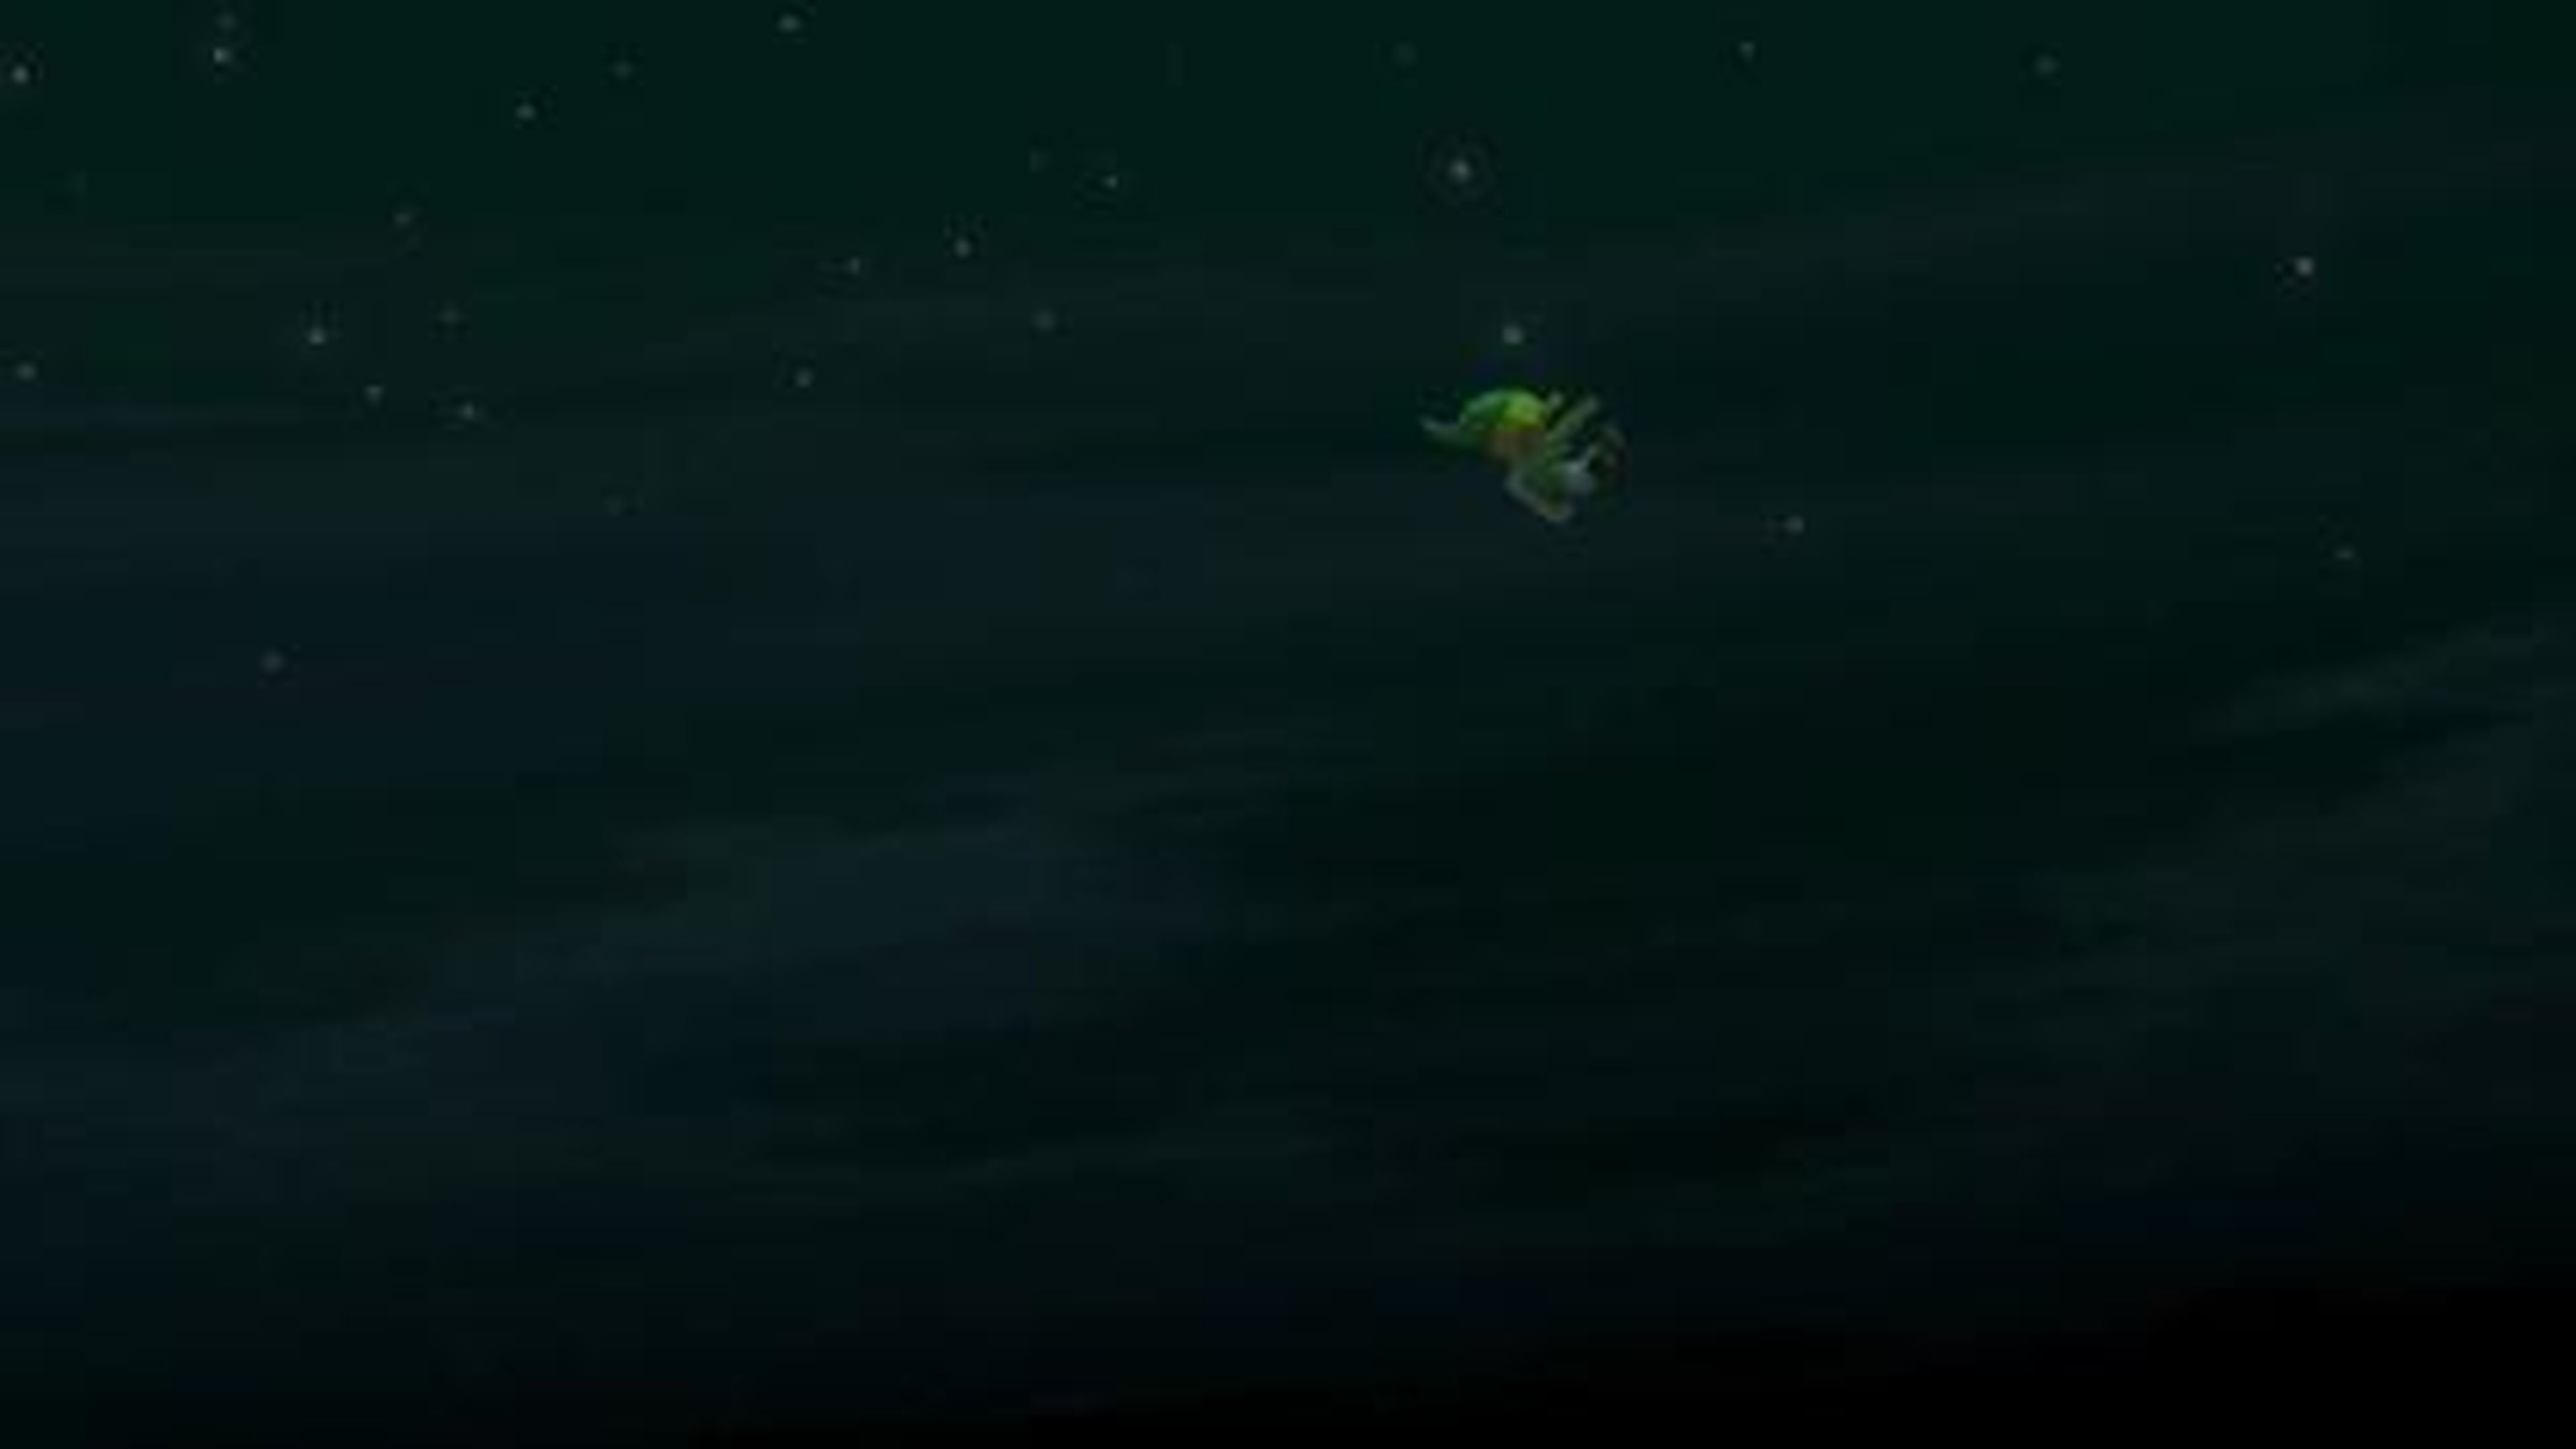 Tráiler de lanzamiento de The Legend of Zelda Wind Waker HD en HobbyConsolas.com